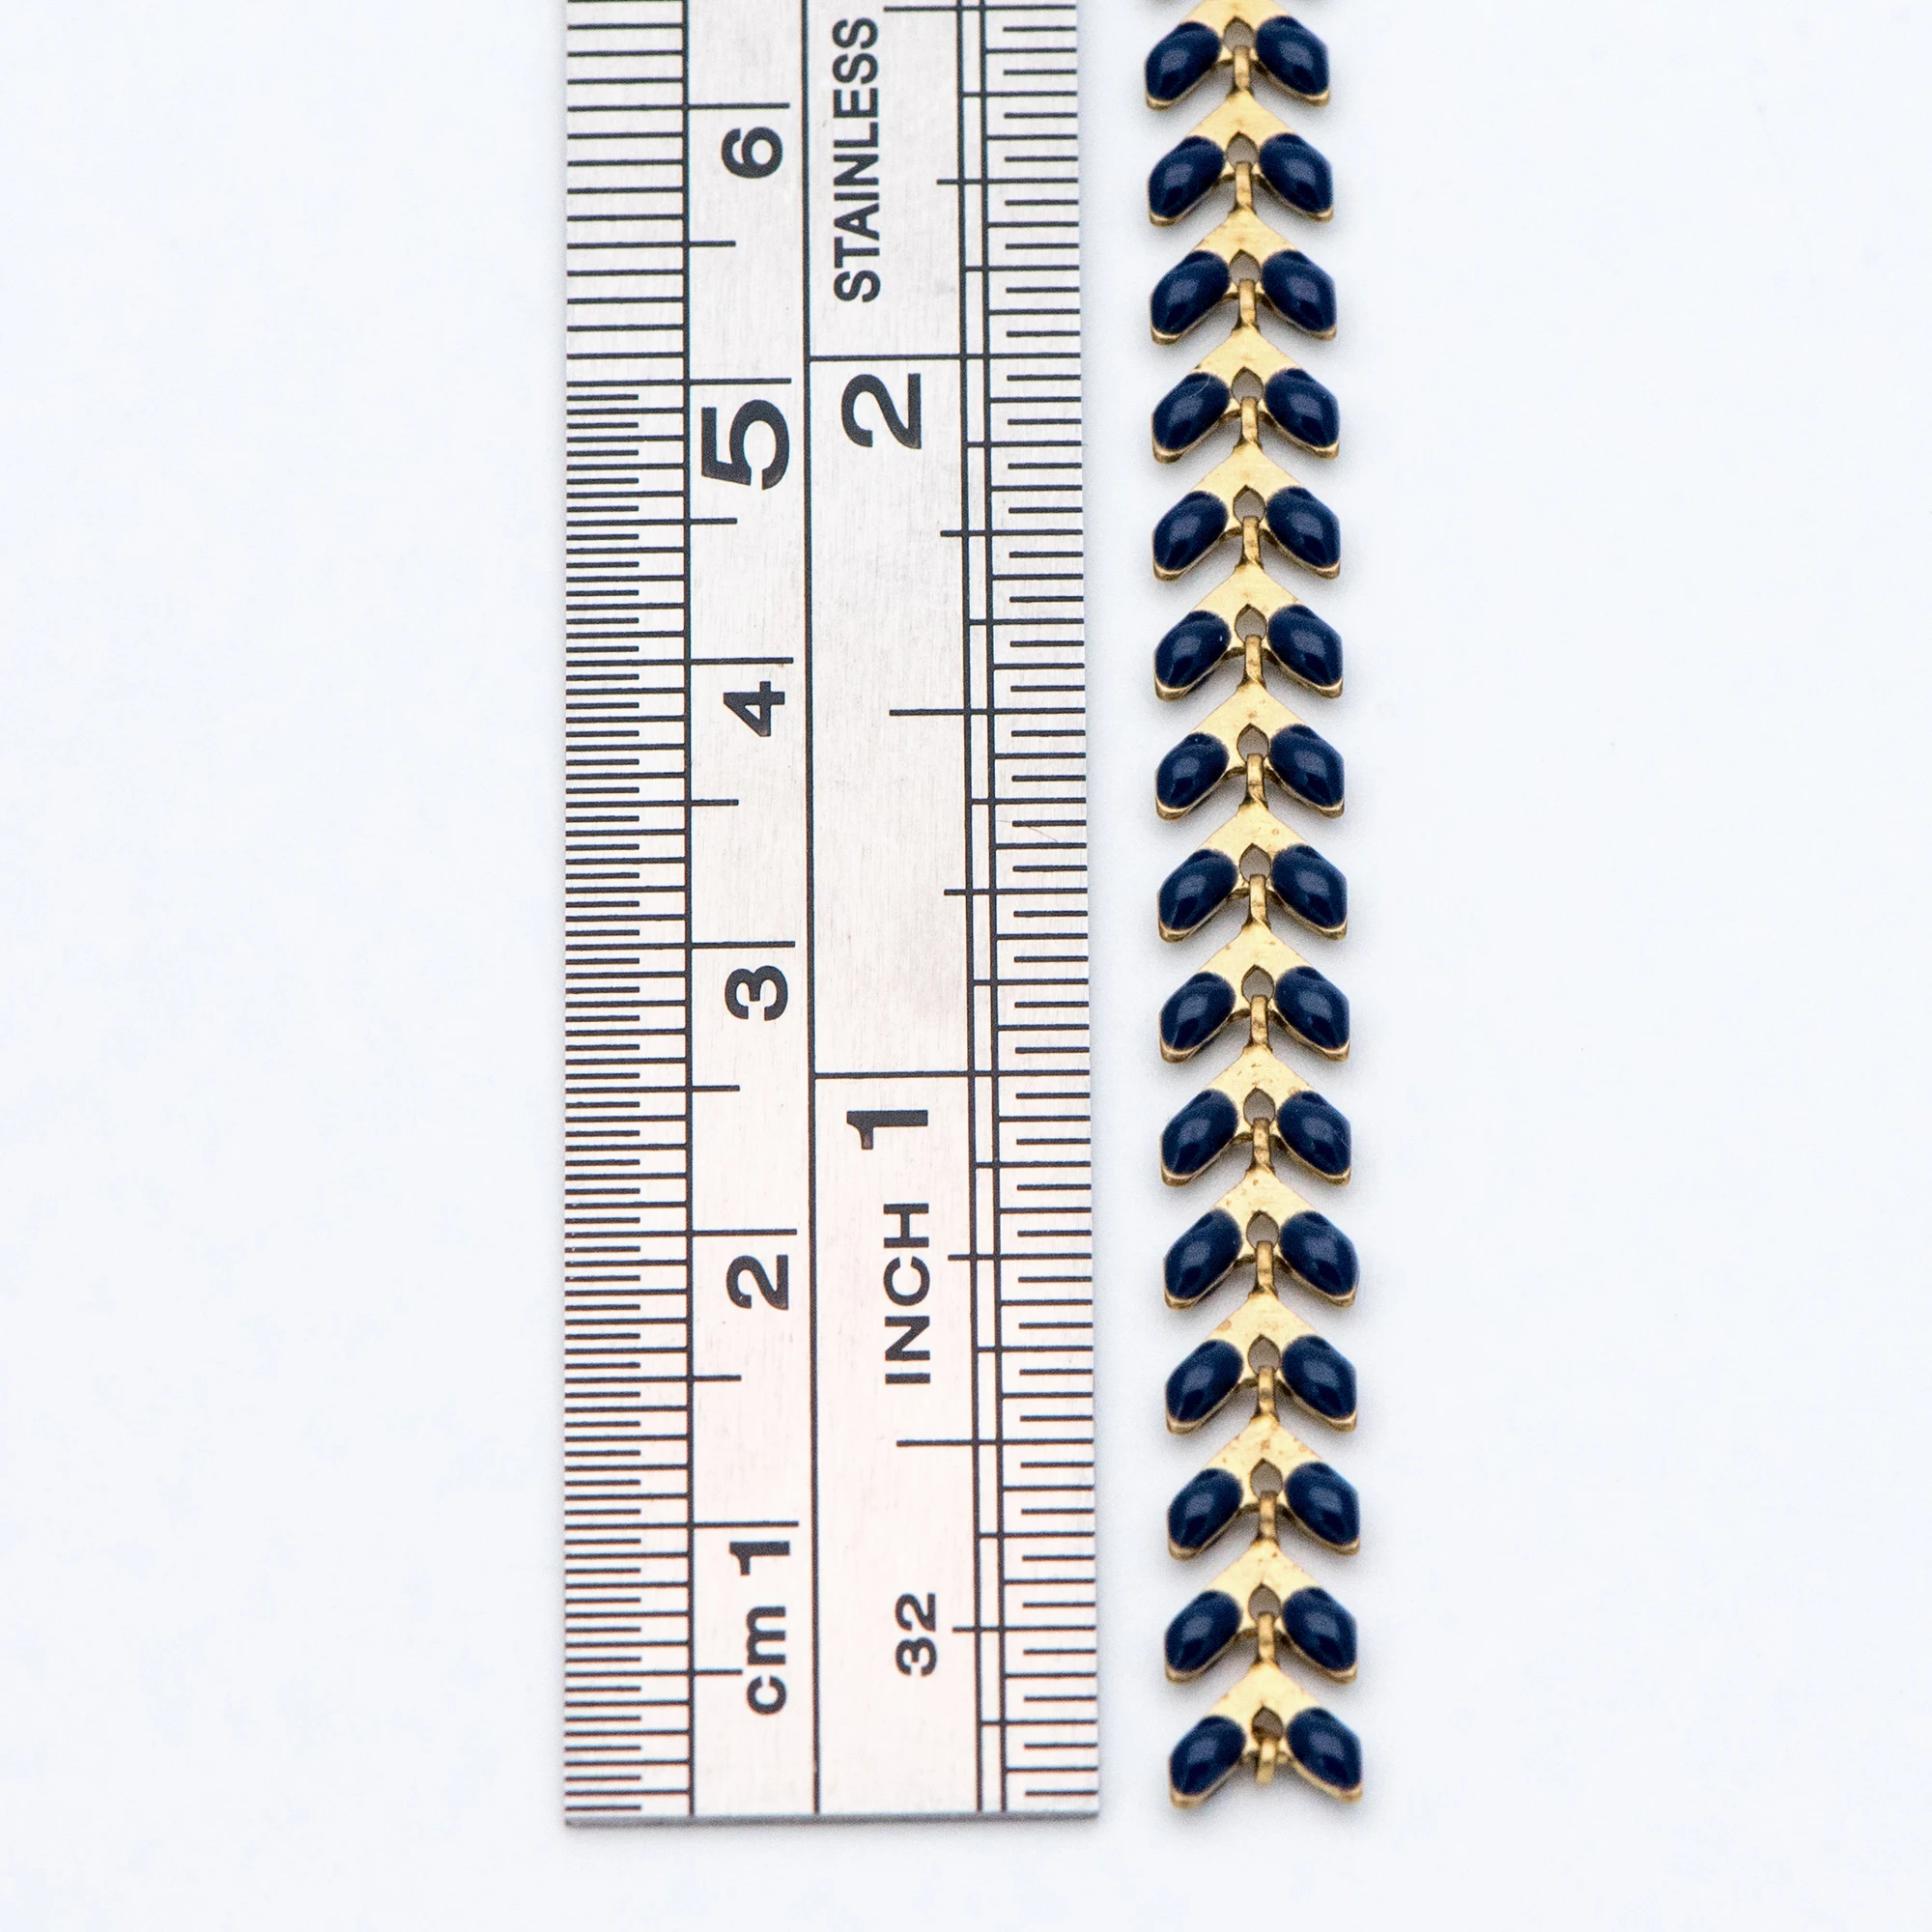 Темно-синяя эмаль латунная цепочка с стрелкой 6 мм, плоская цепочка шеврона, елочка рыбья кость дизайнерская цепочка(# LK-048-17)/1 метр = 3,3 фута